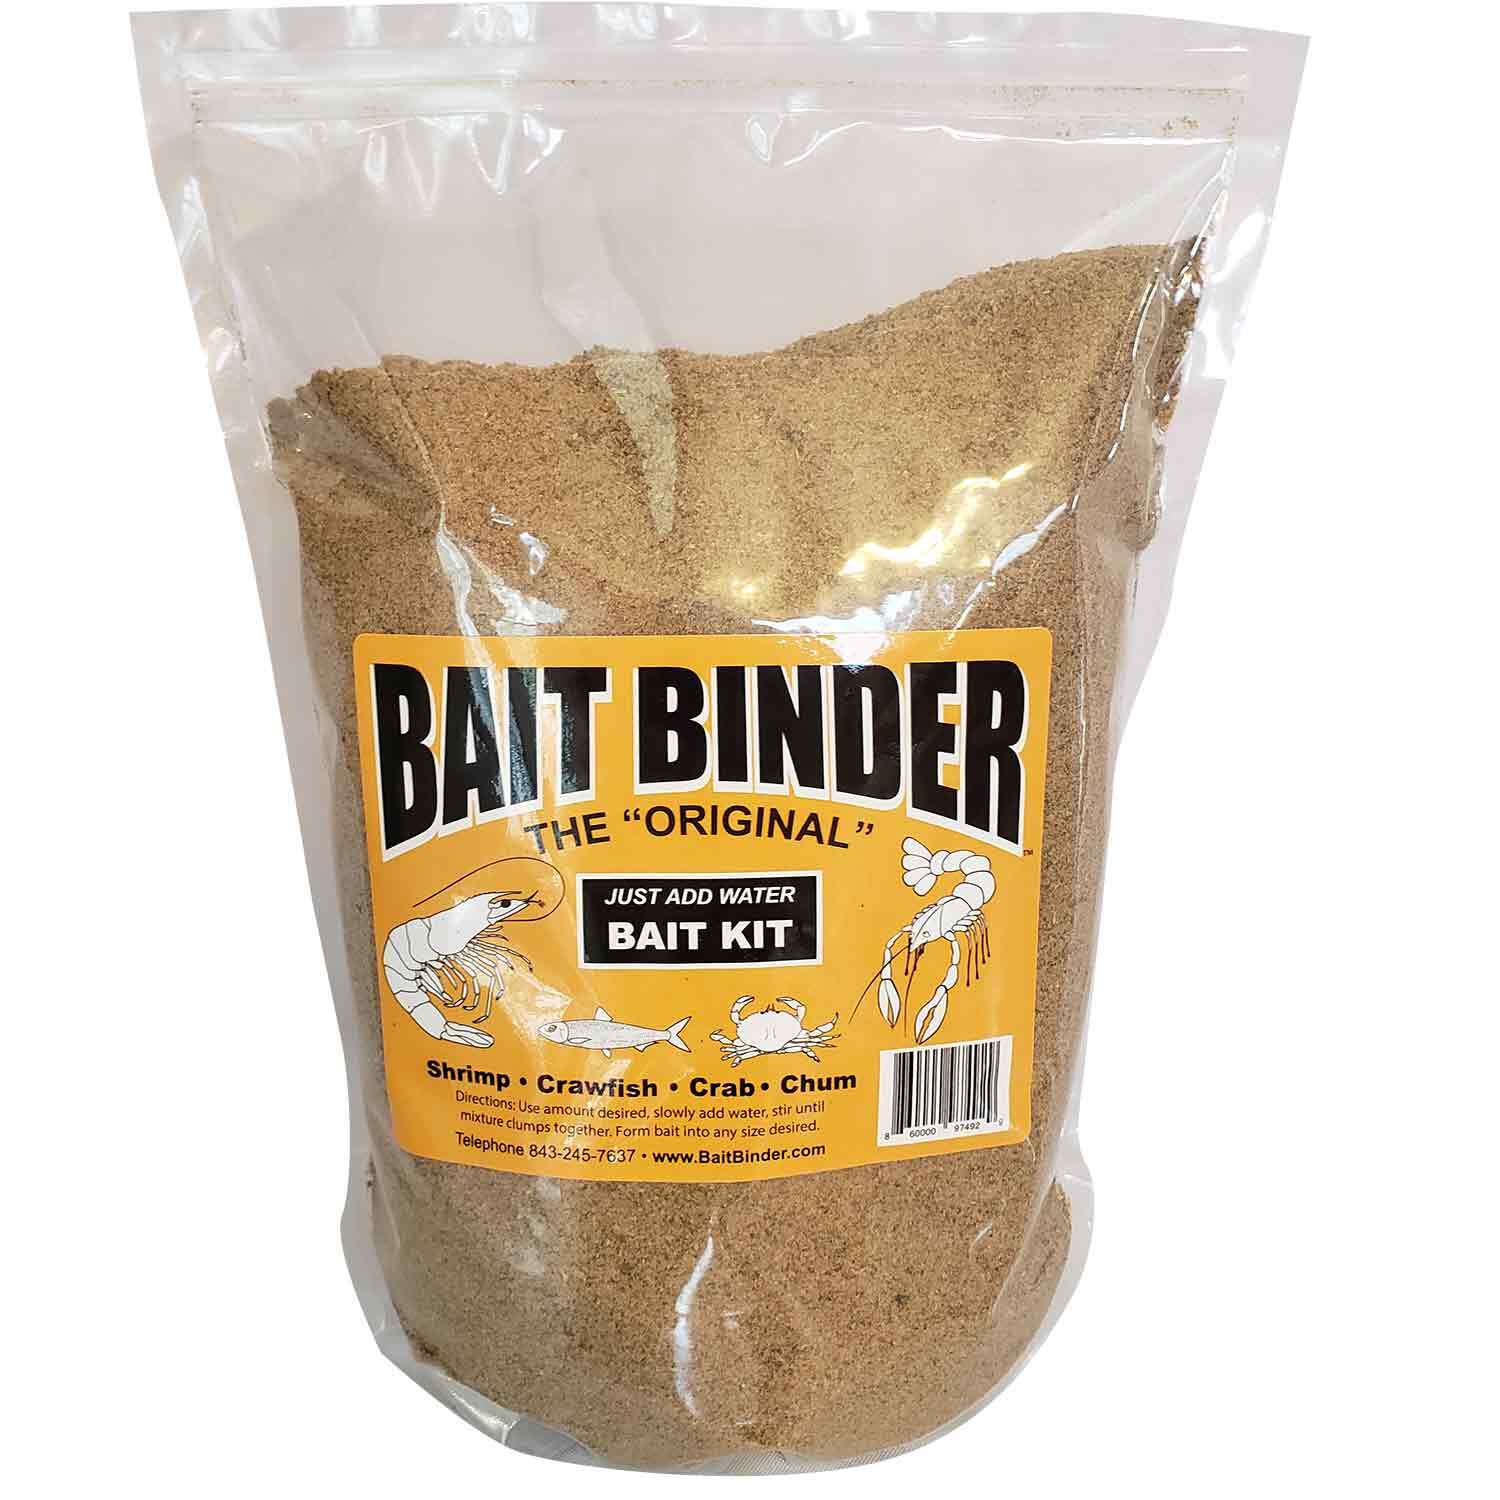 COASTAL BAITS 2 oz. Bait Binder Catfish Cubes Liver Bait, Blueberry Garlic